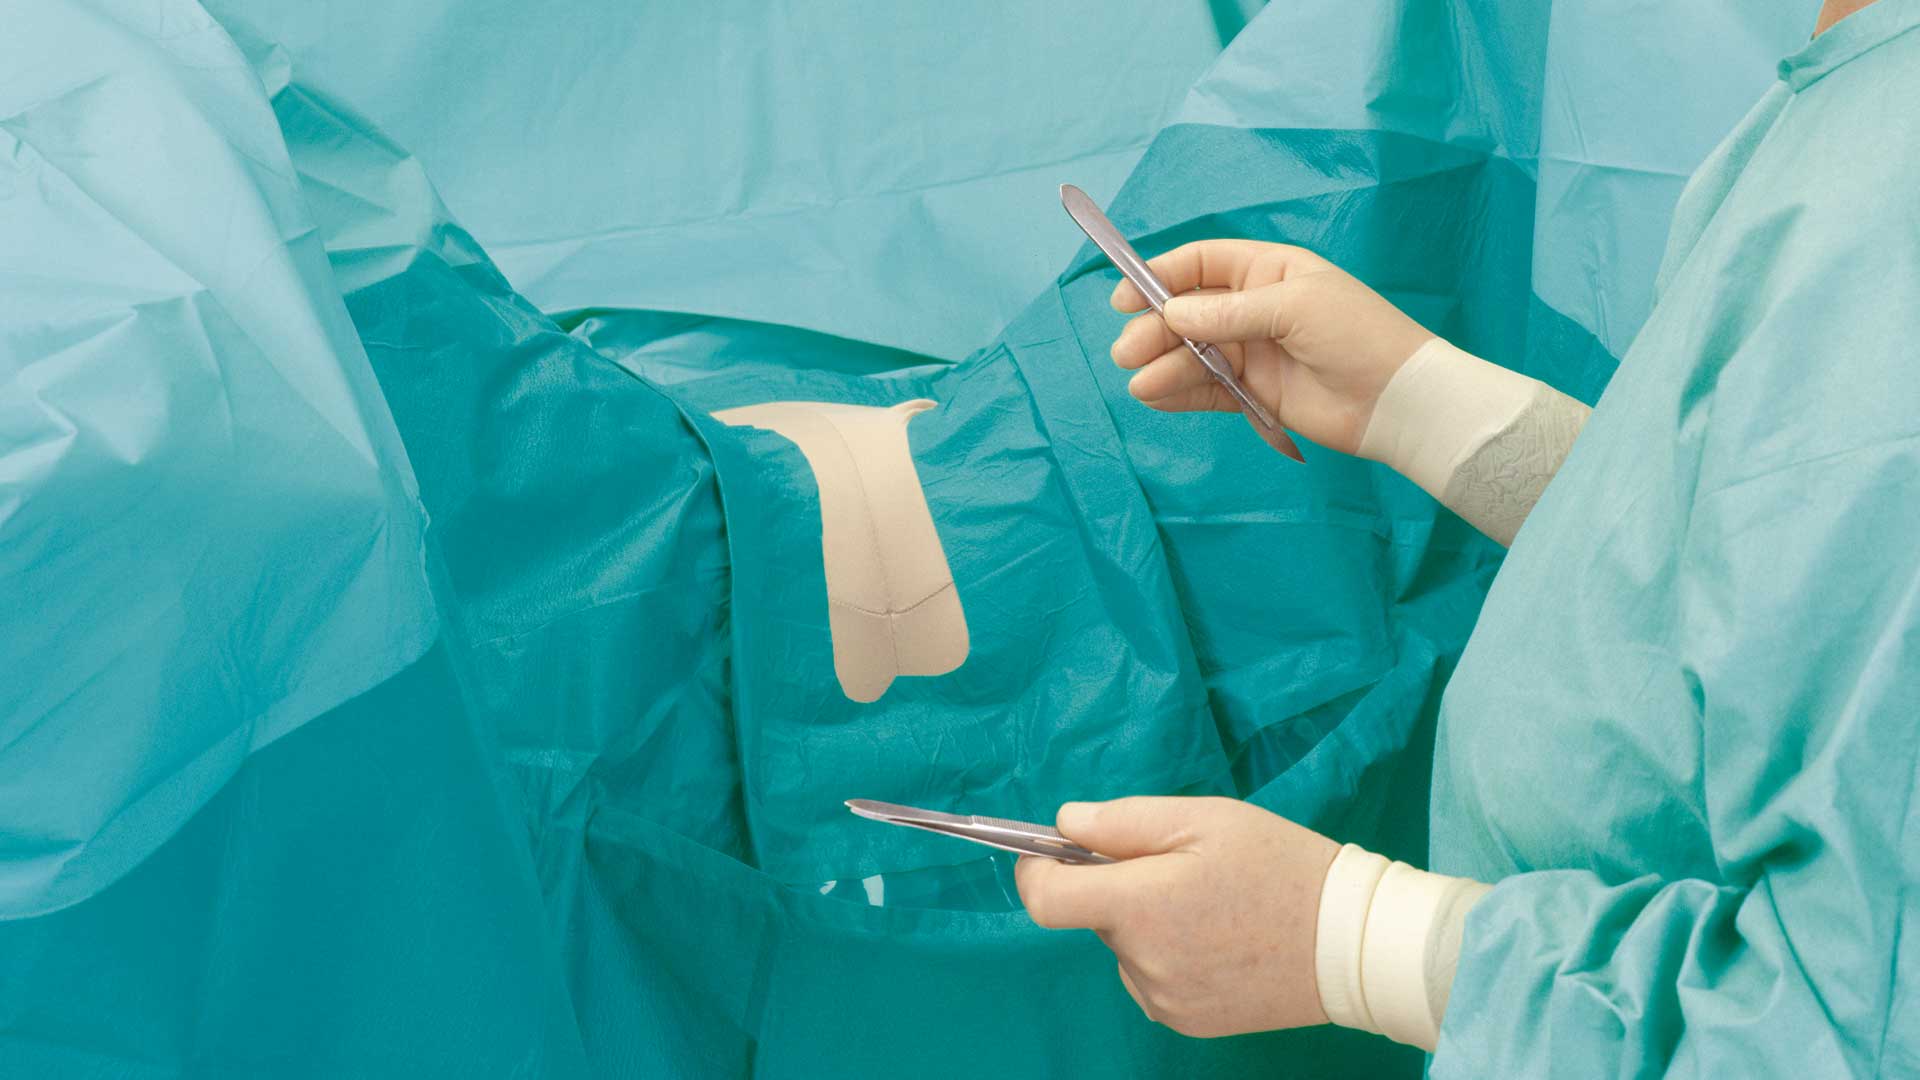 BARRIER nőgyógyászati lepedőt használó sebész műtét közben